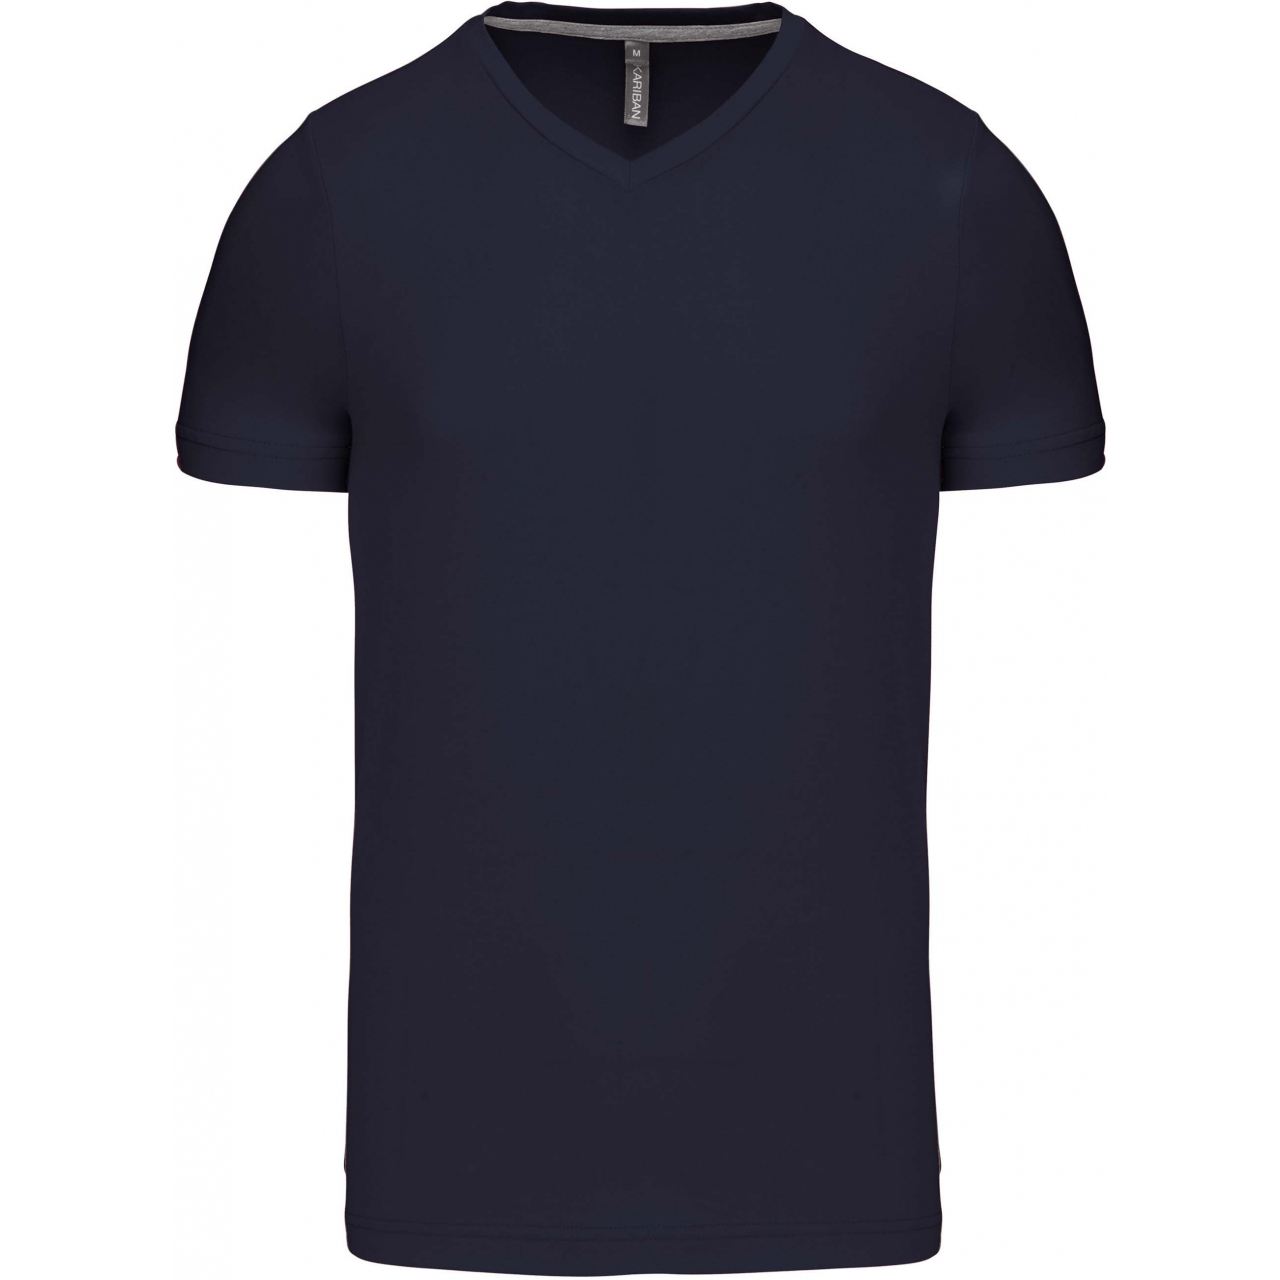 Pánské tričko Kariban krátký rukáv V-neck - navy, M